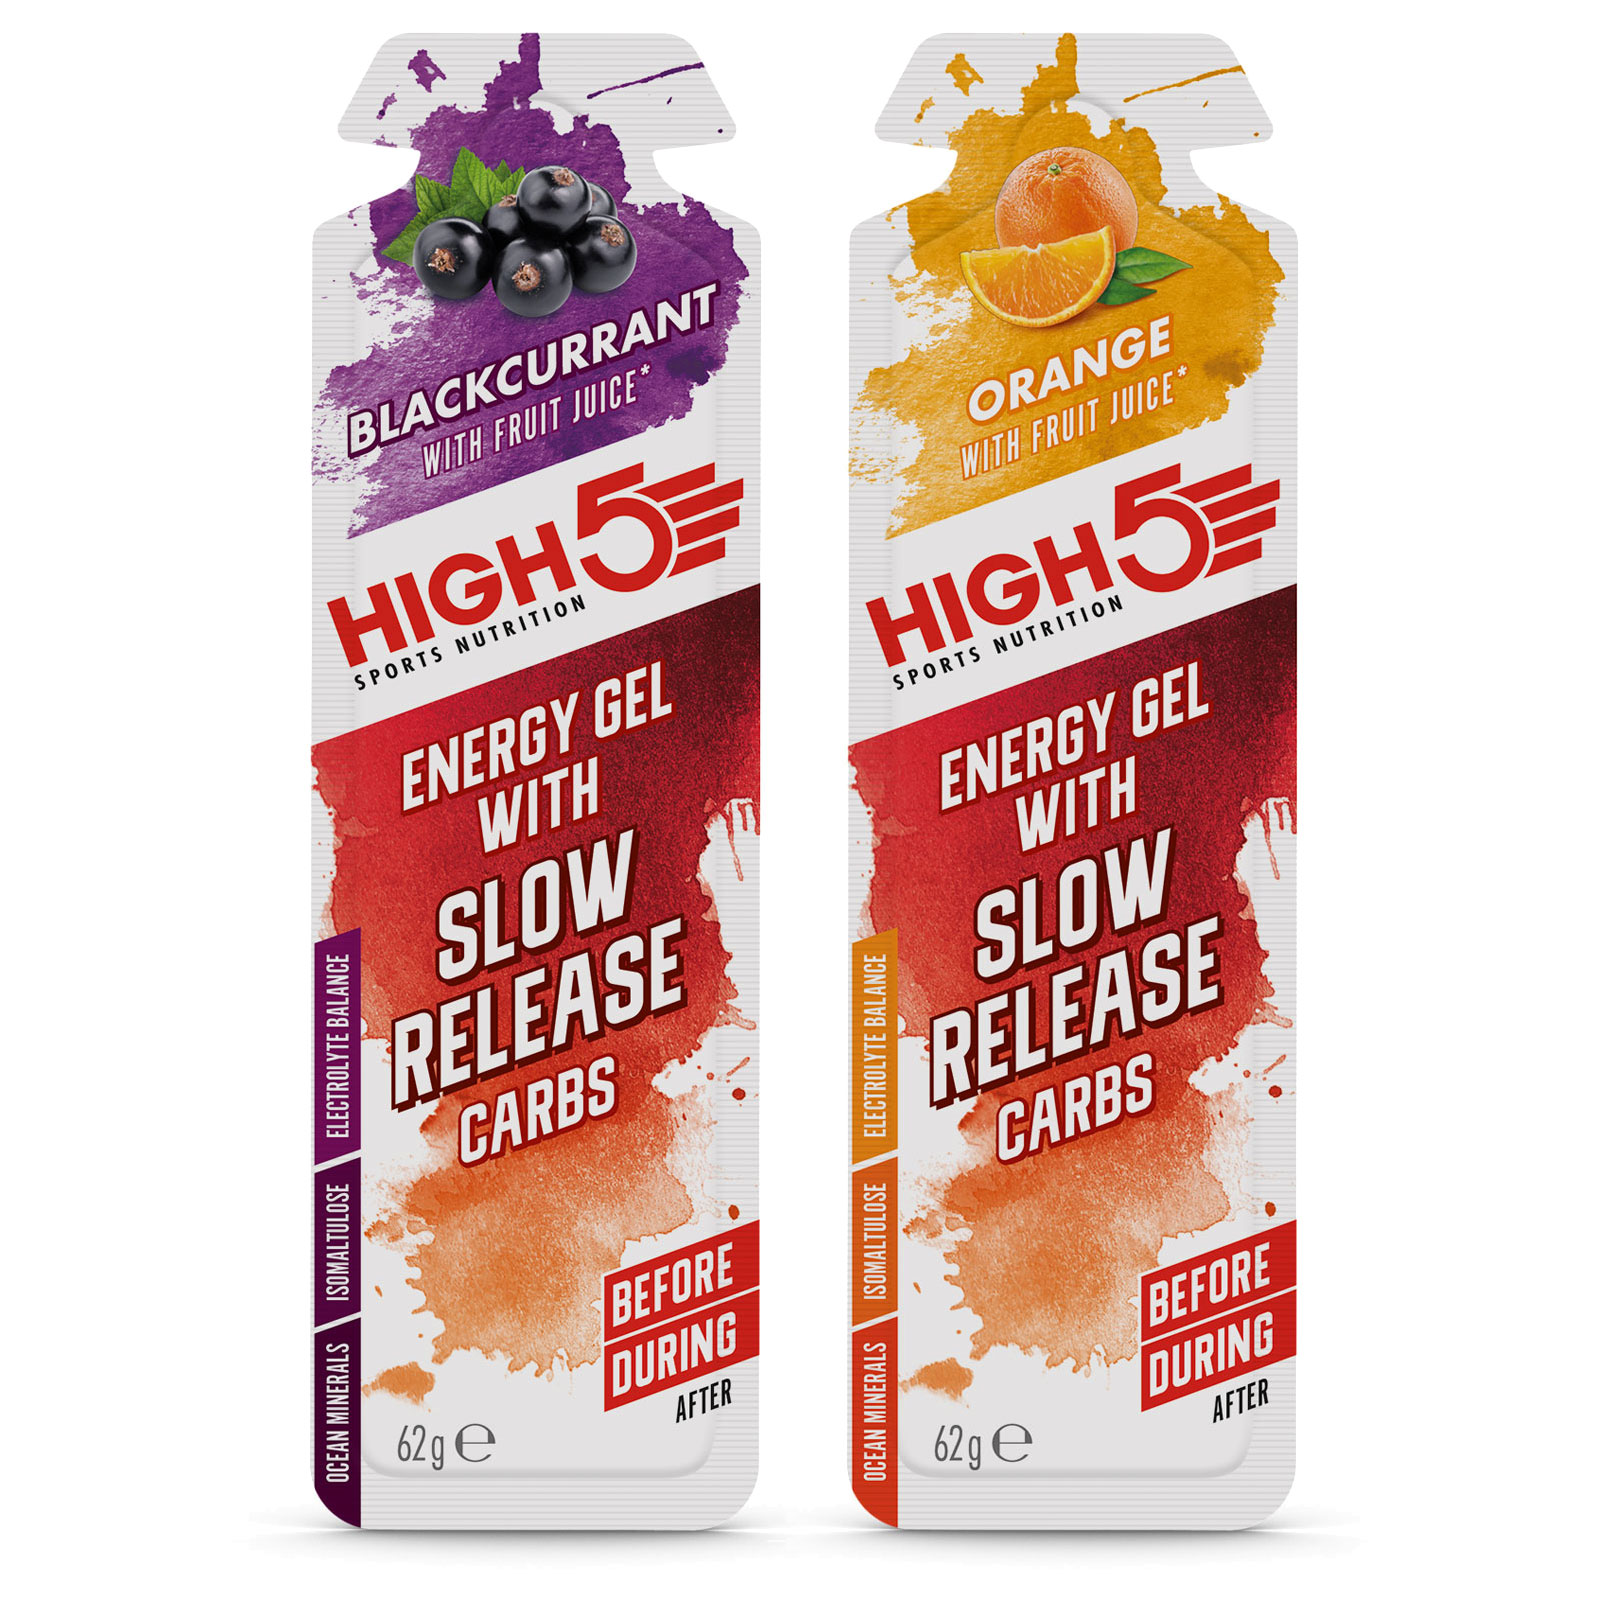 Produktbild von High5 Energy Gel with Slow Release Carbs - Kohlenhydrat-Gel - 4x62g